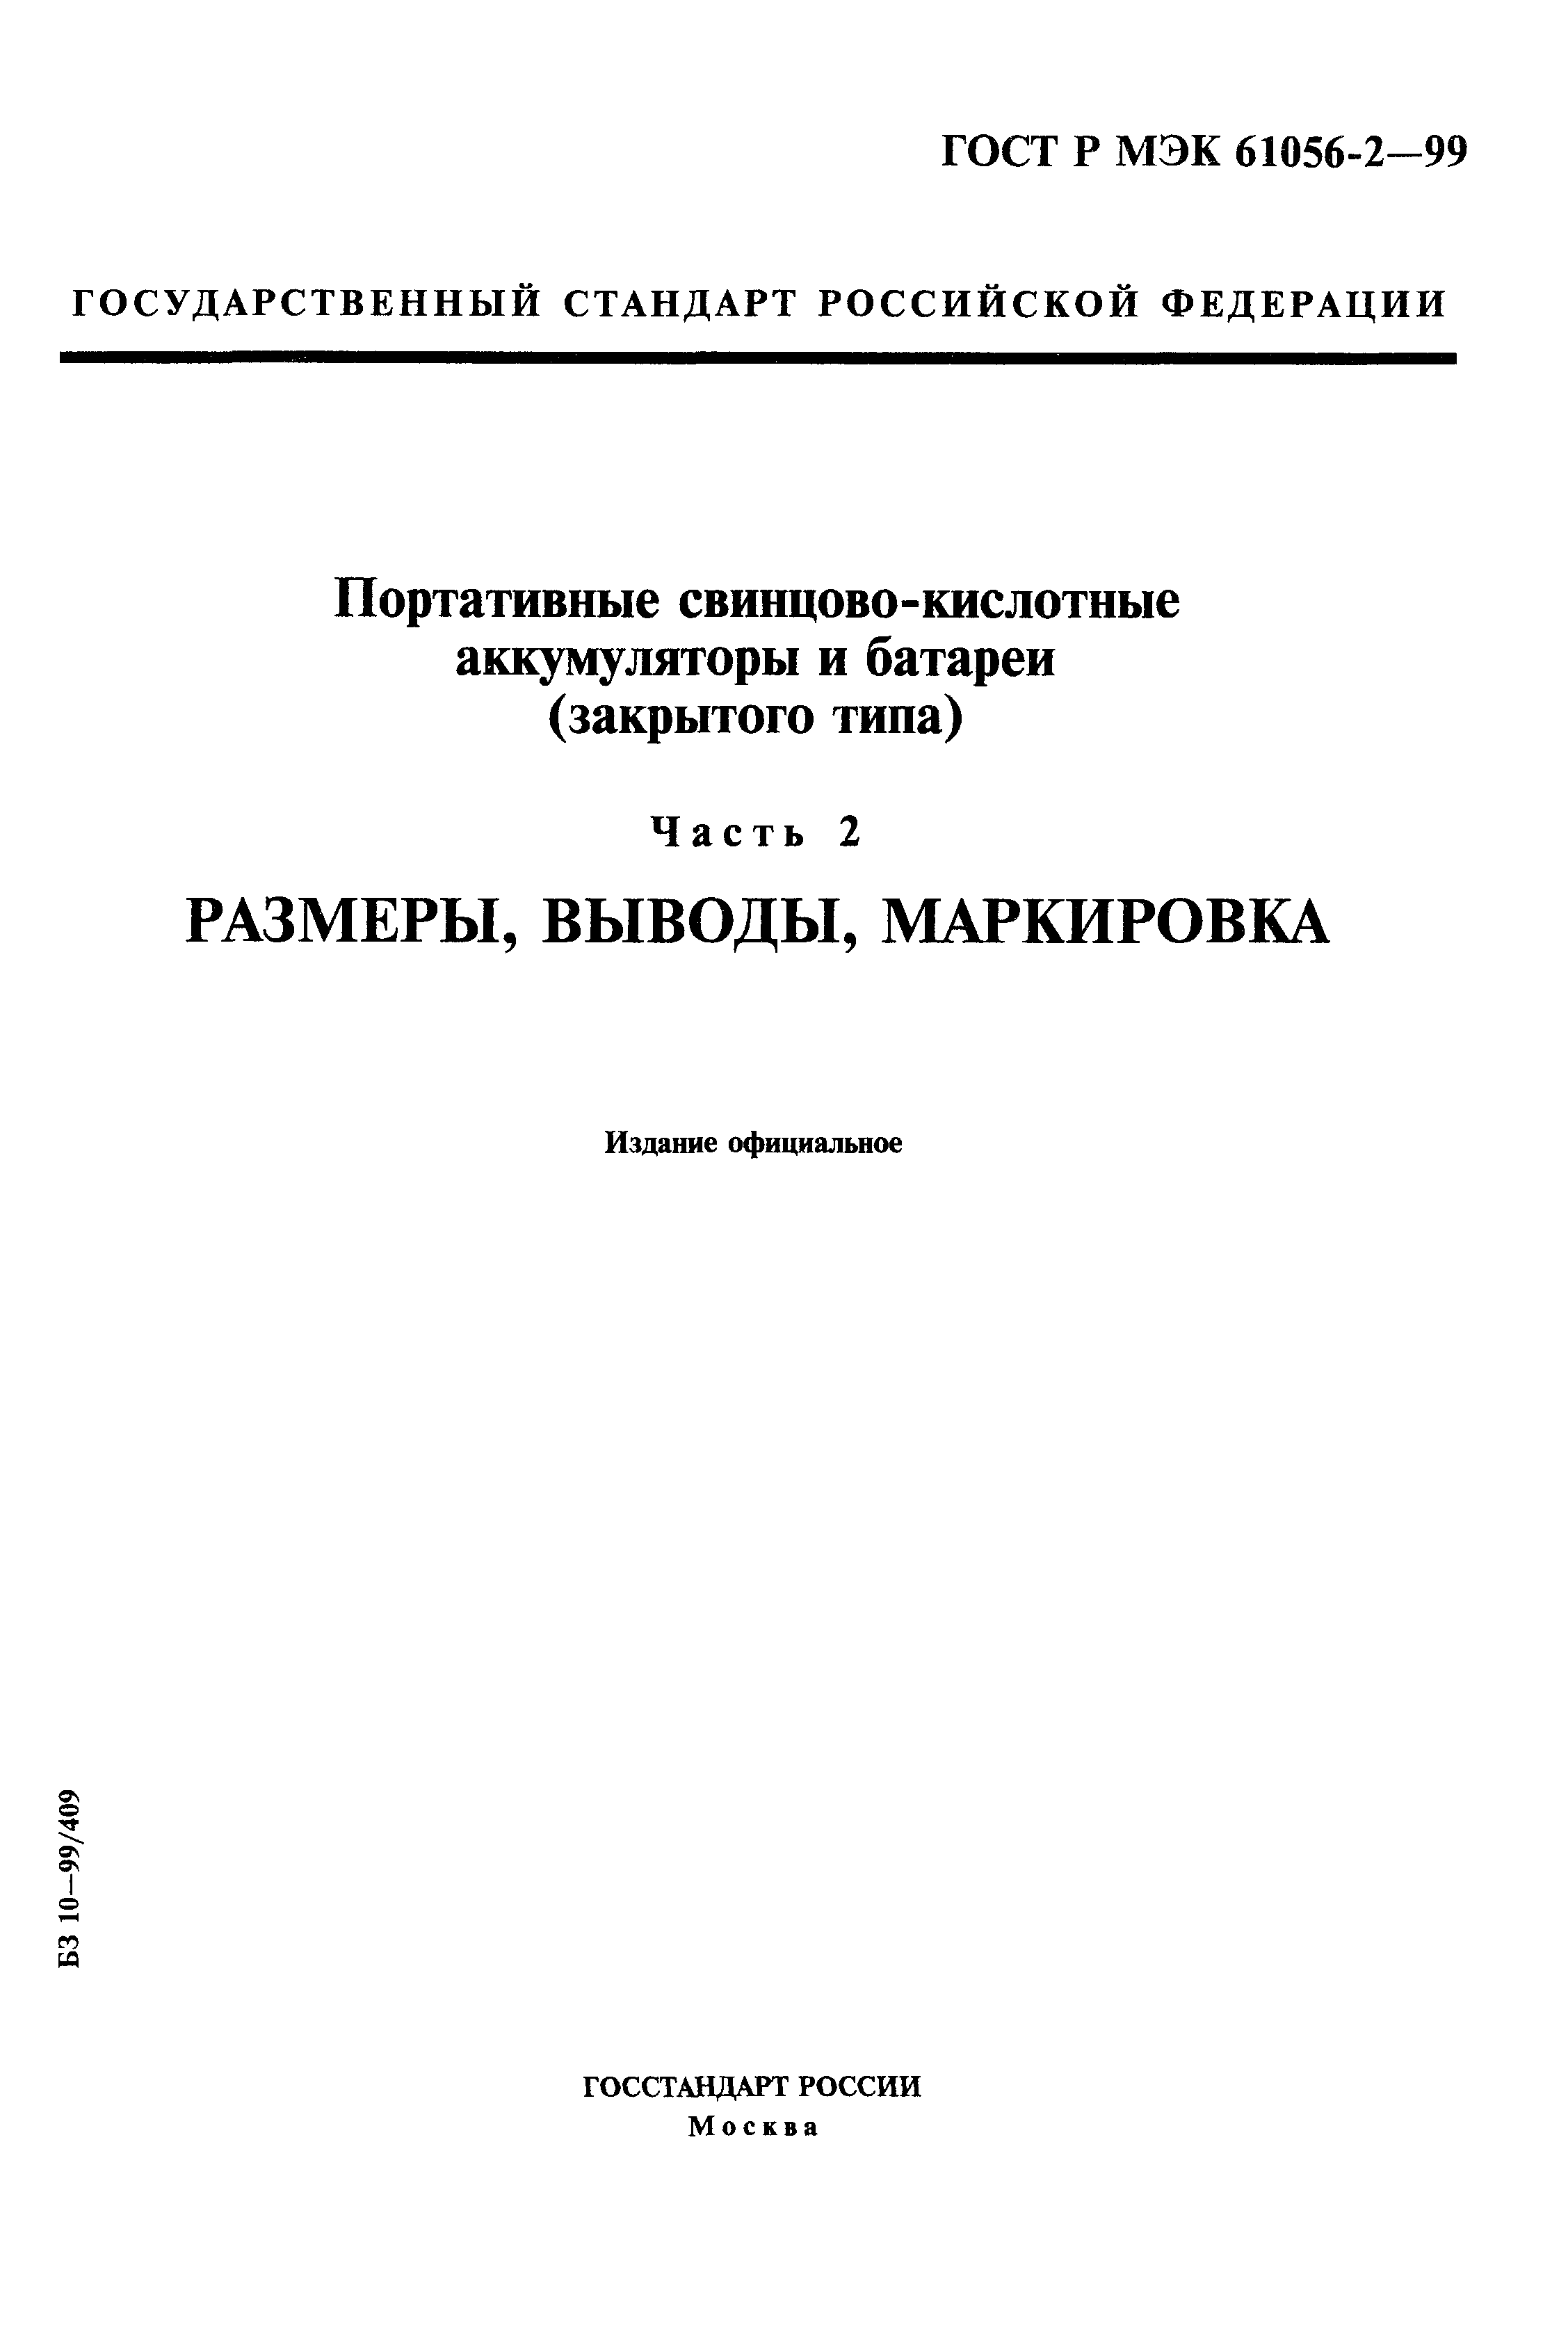 ГОСТ Р МЭК 61056-2-99